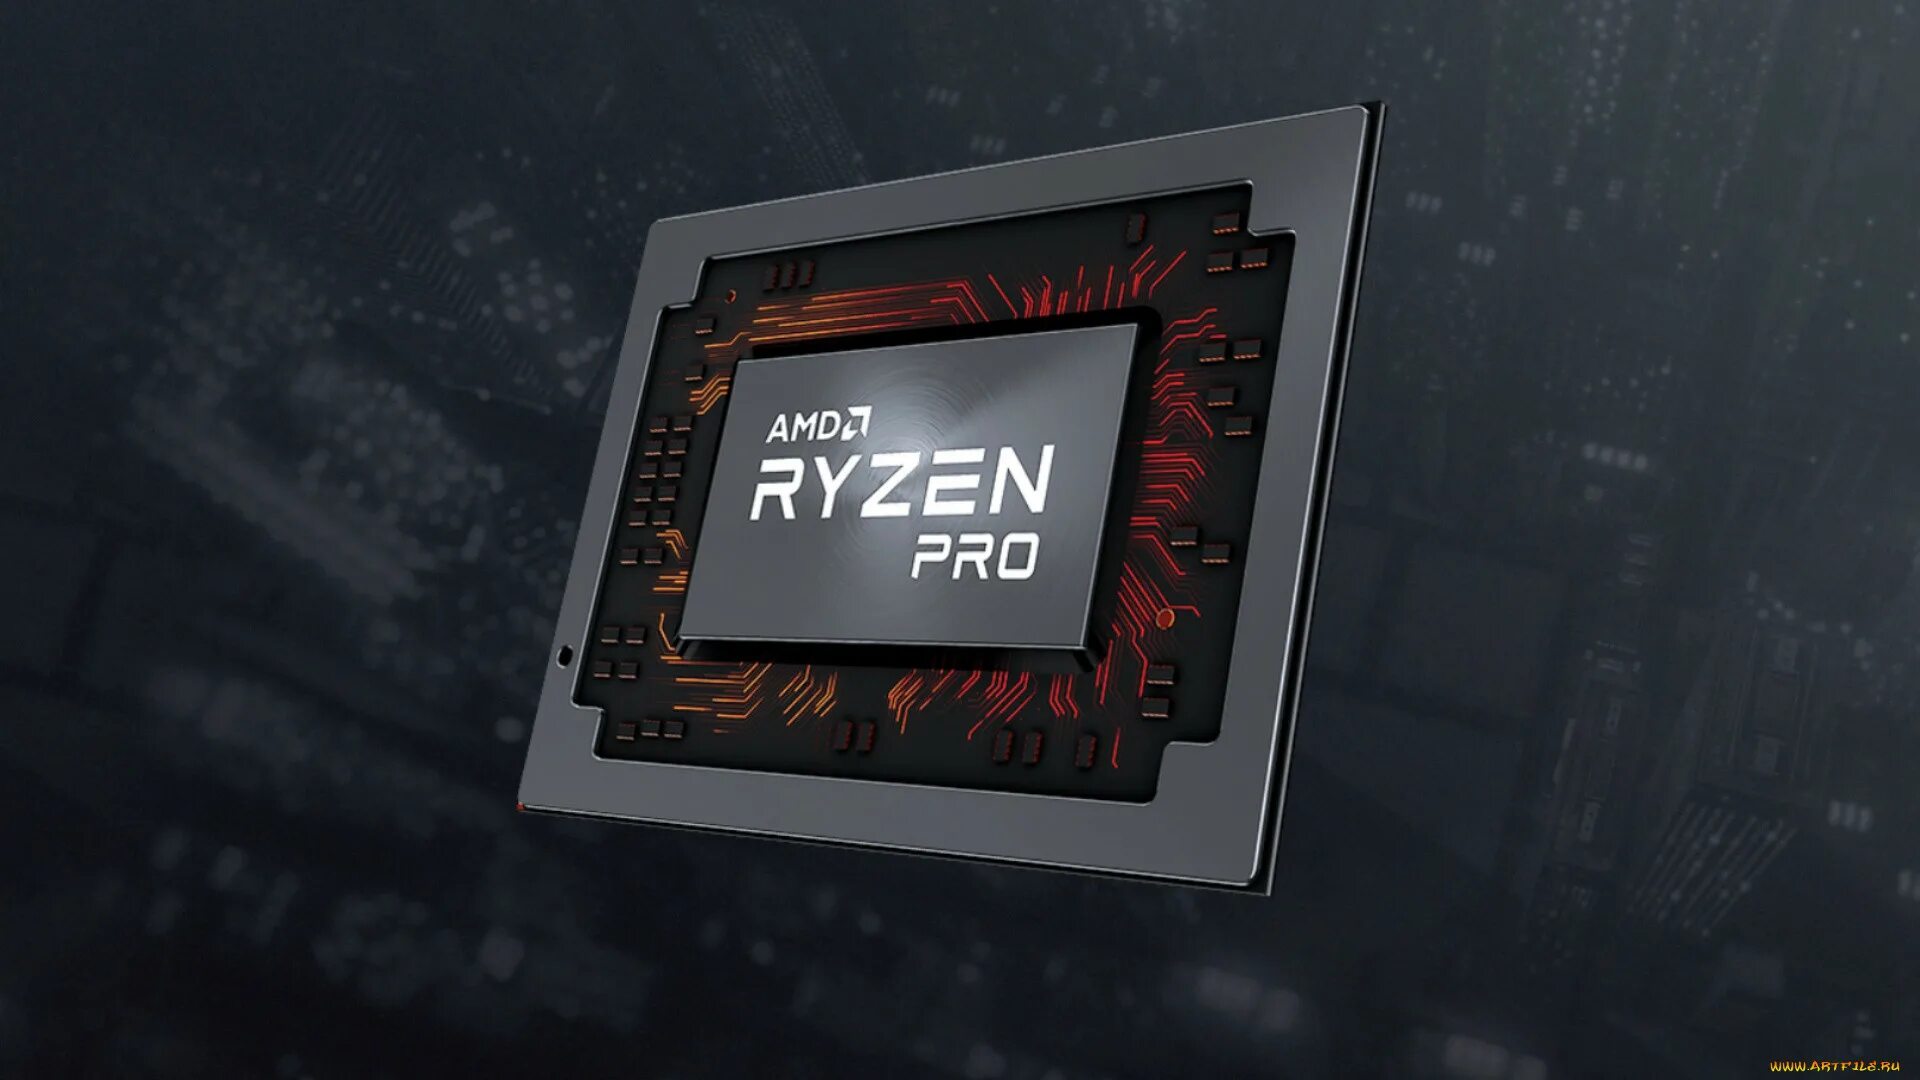 Ryzen 1920x1080. Ryzen. Обои Ryzen. Картинки AMD Ryzen. Ryzen 1920 1080.